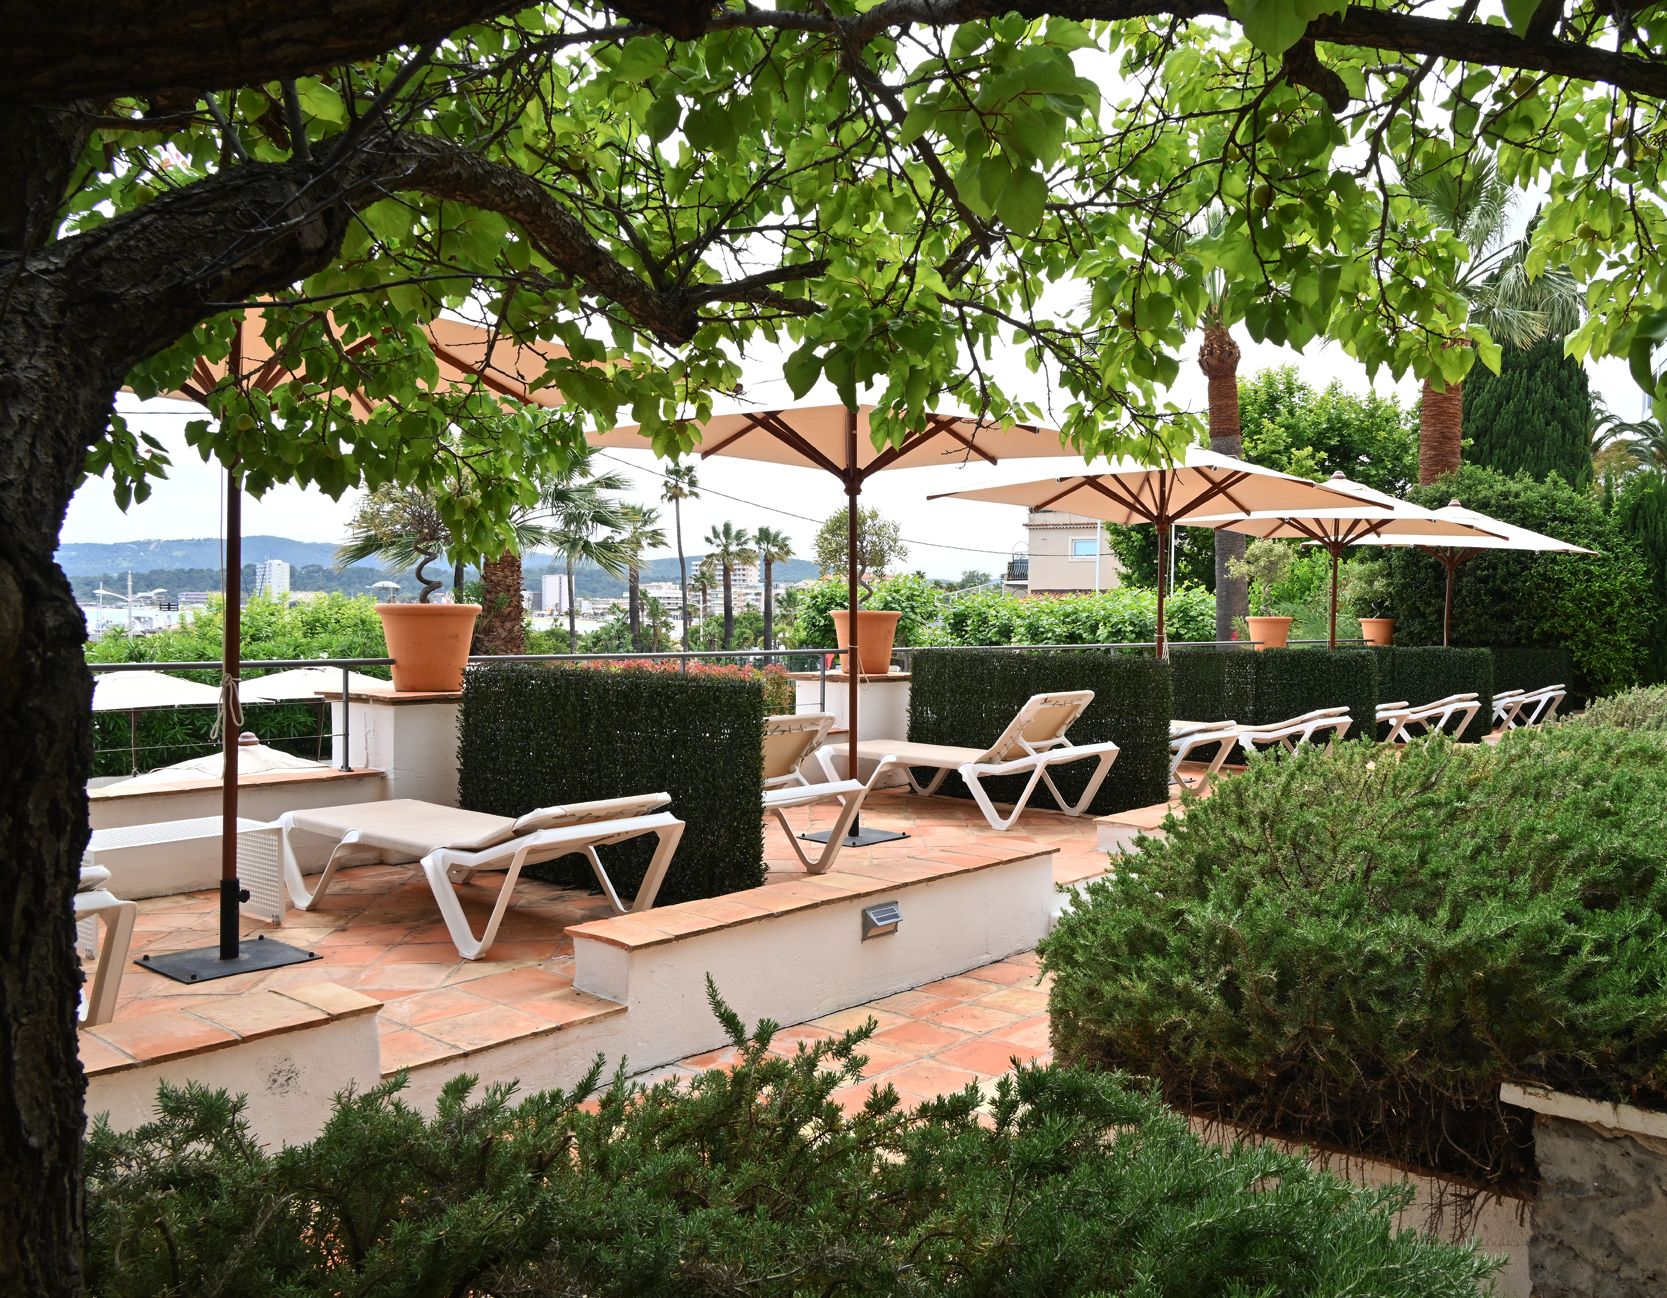 L'hôtel la Calanque au Lavandou dispose d’un jardin provençal calme et ombragé